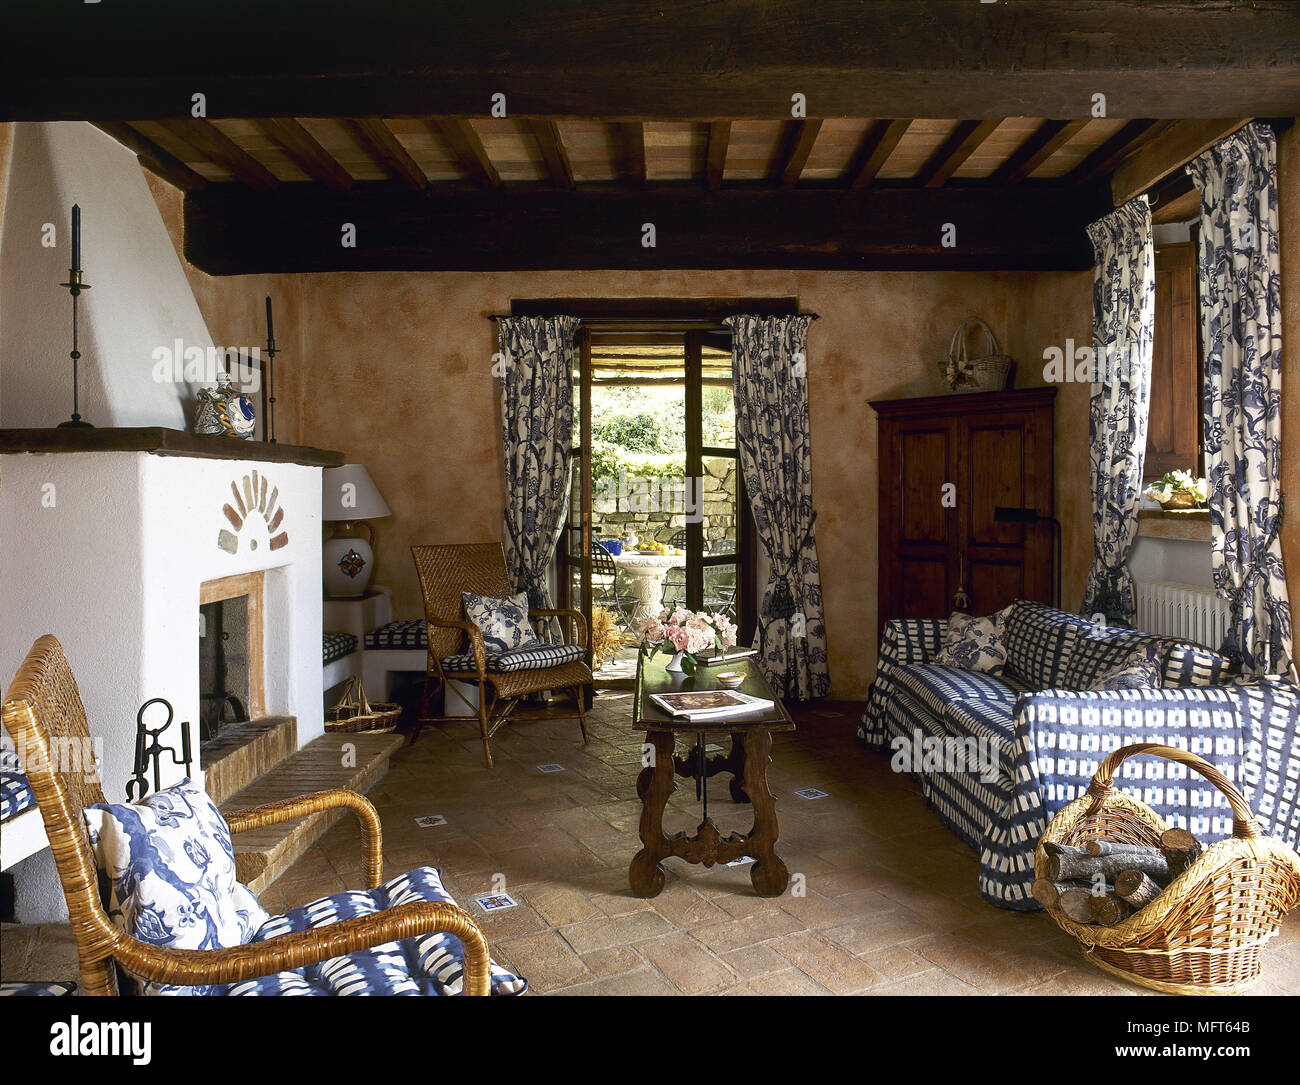 Rustikale terracotta Wohnzimmer mit Holzbalkendecke und Kamin, Muster  Vorhänge am Fenster Stockfotografie - Alamy